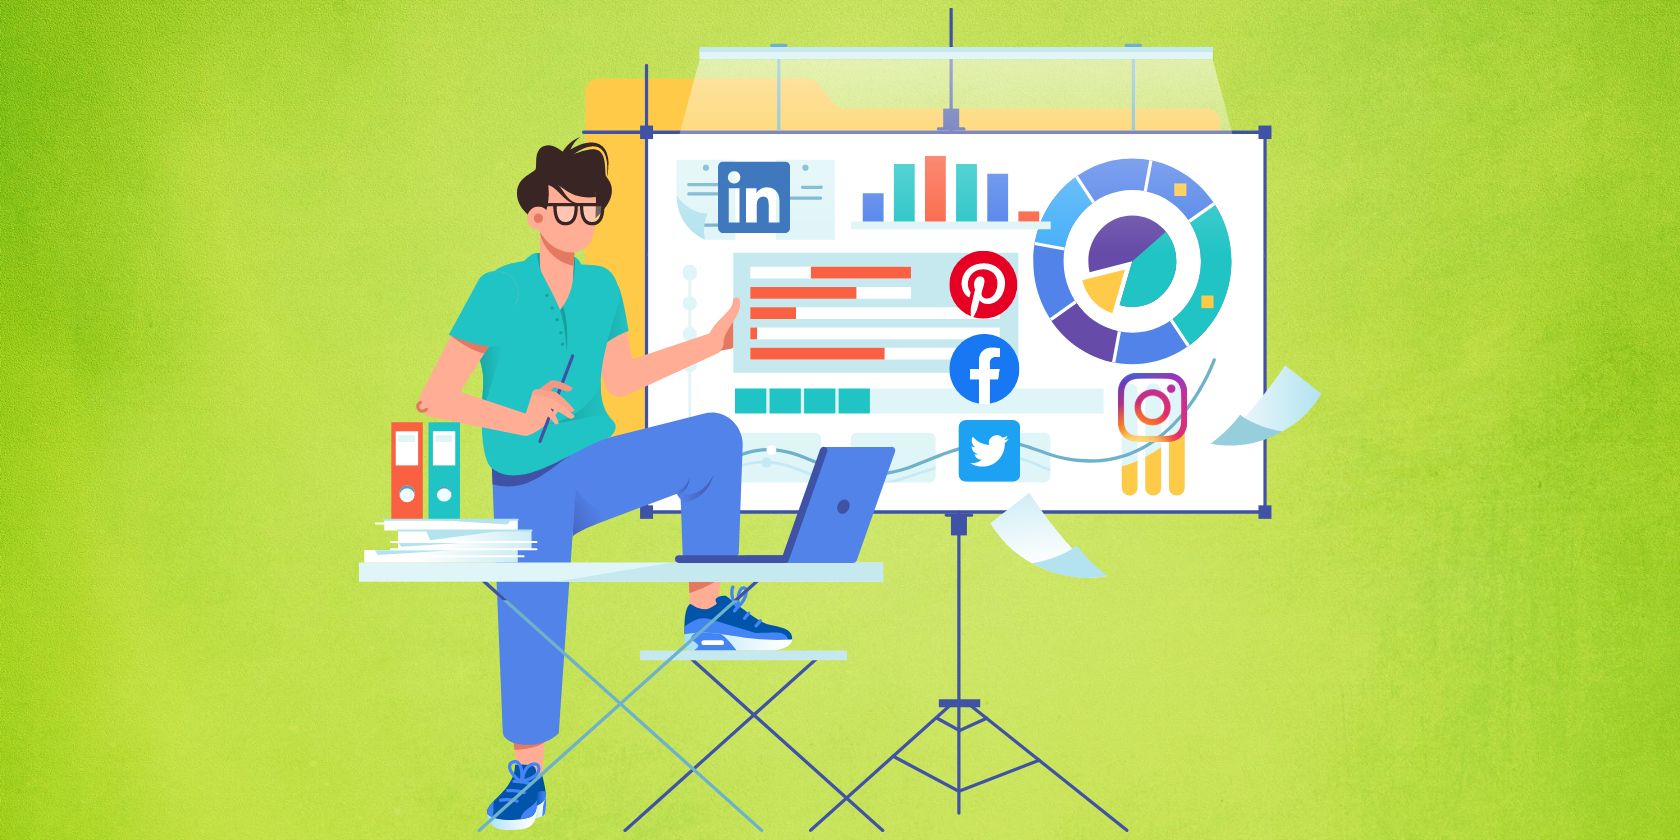 Illustration of social media metrics analysis in whiteboard